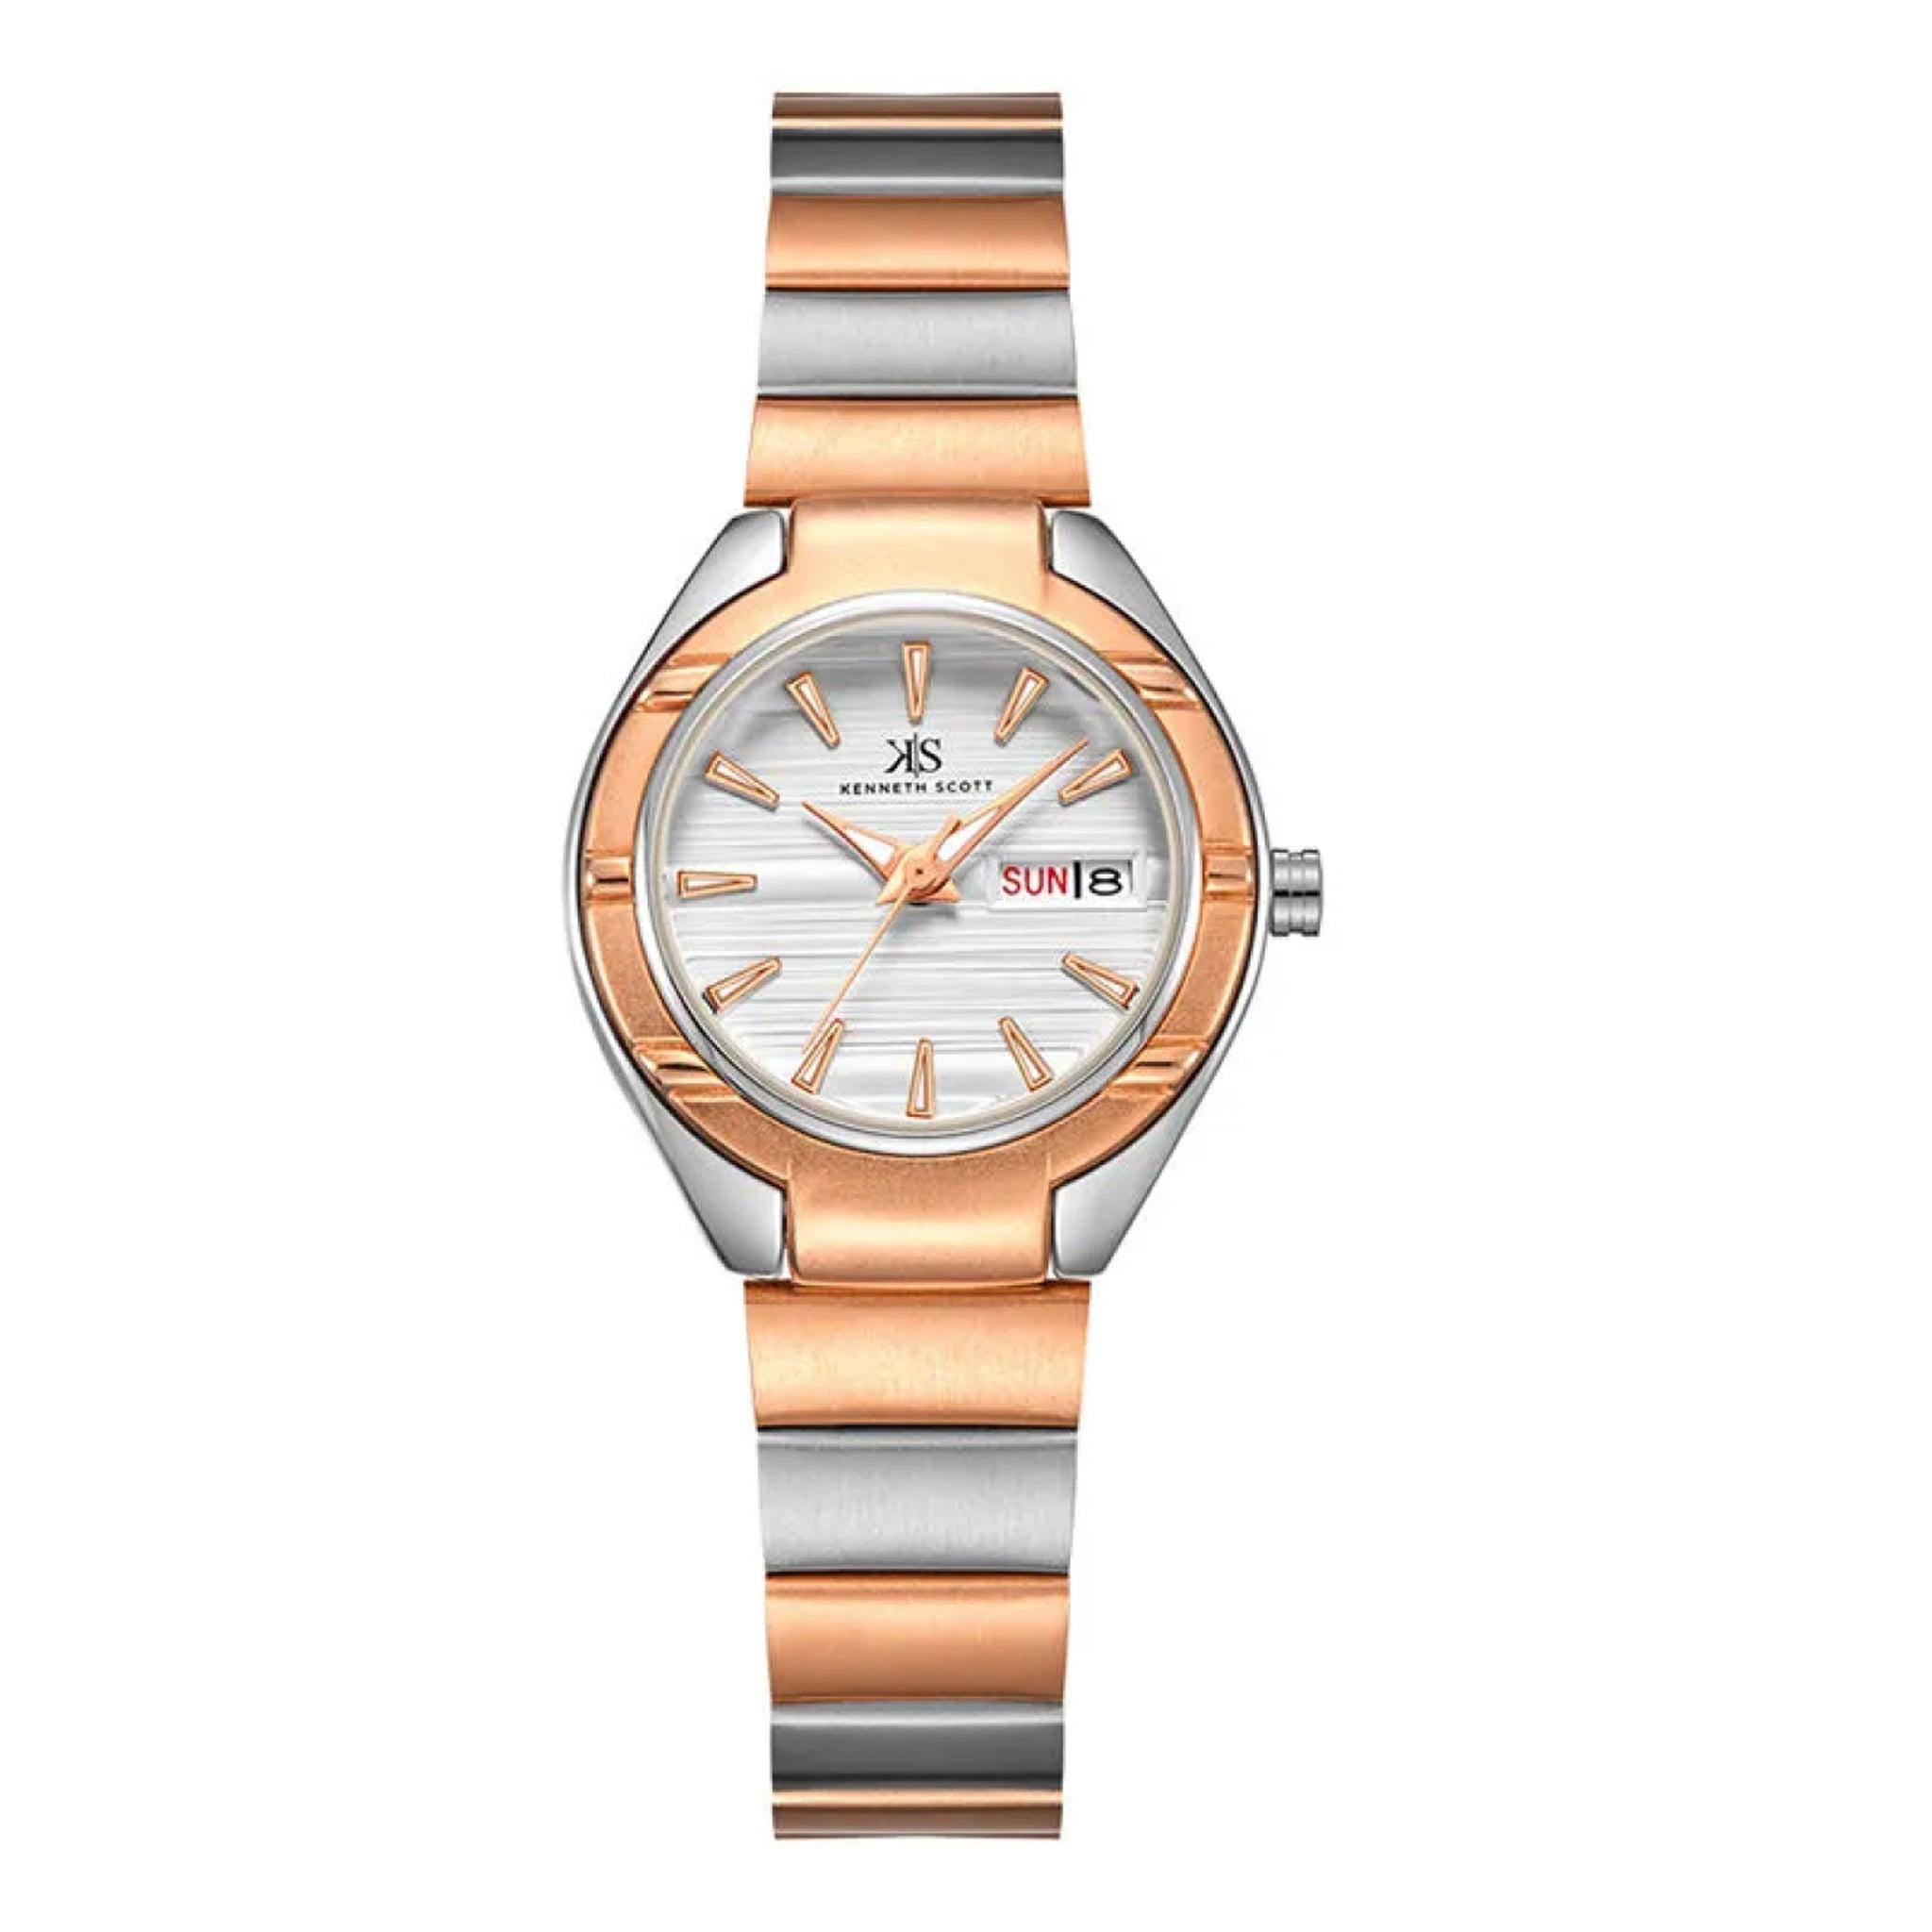 ساعة يد تناظرية نسائية - الذهبي الوردي والفضي - كينيث سكوت Kenneth Scott Women's Analog Watch - K22035-Kbkw-L